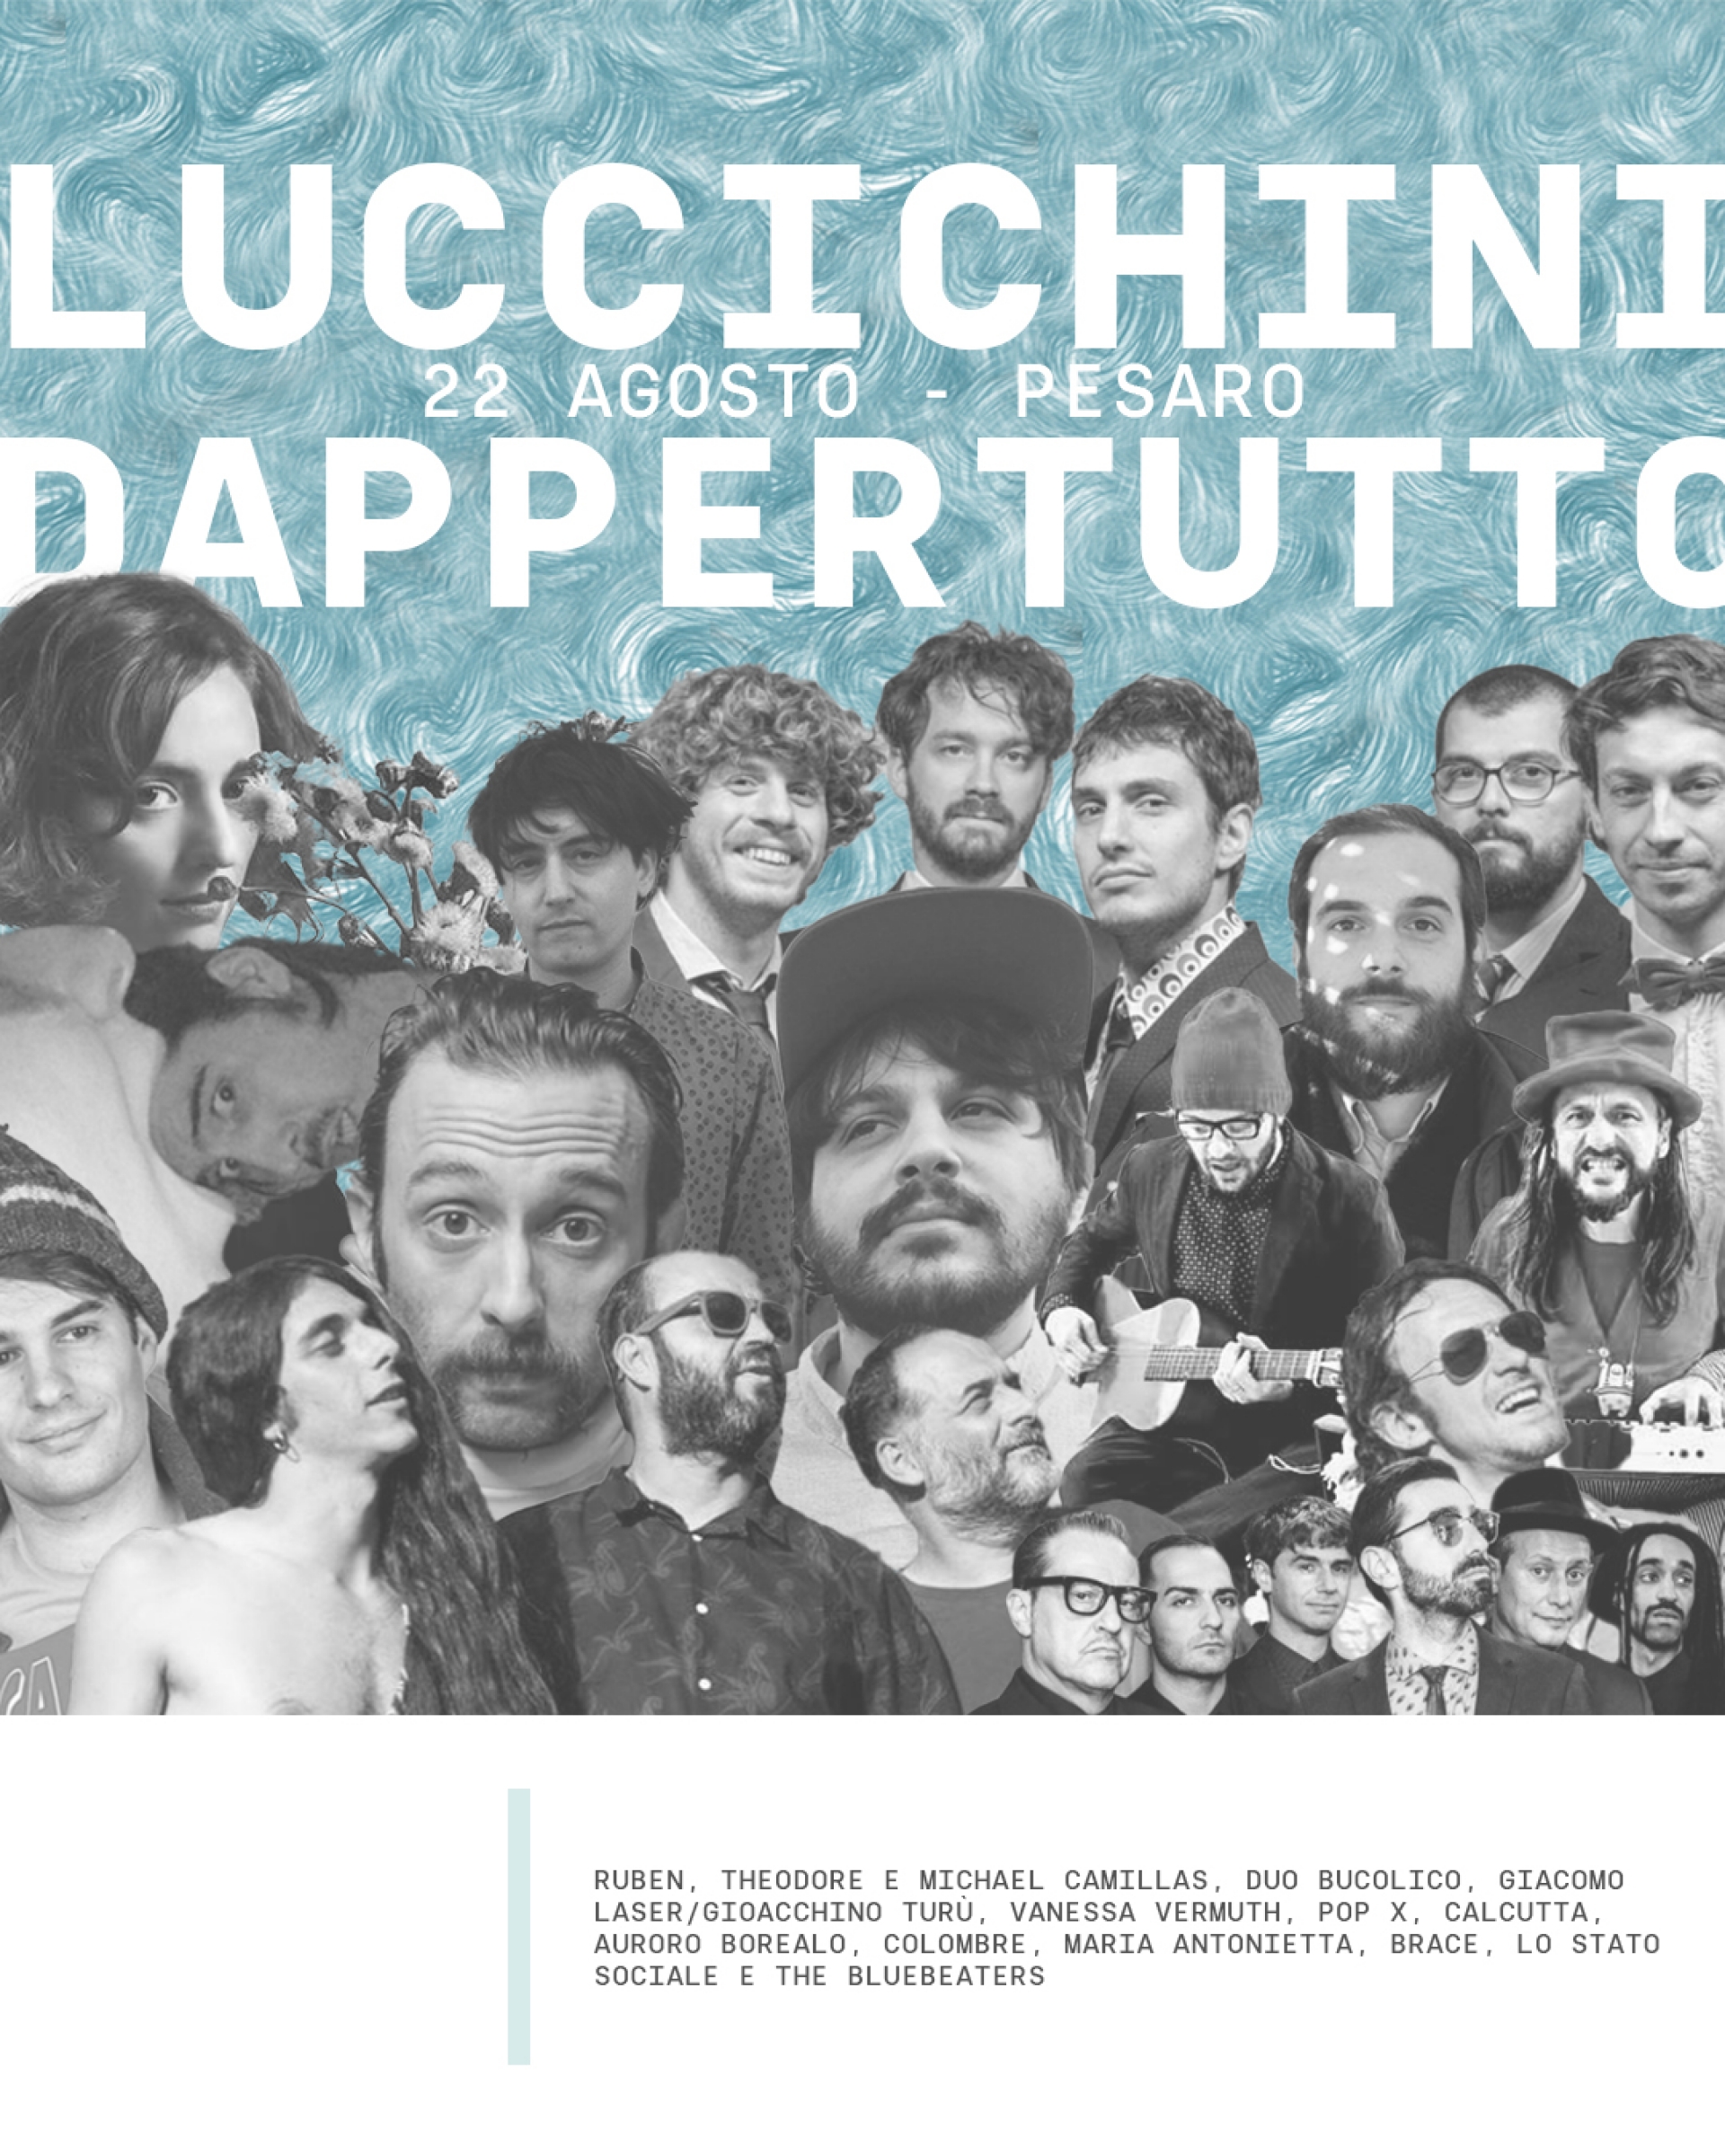 Il concerto Luccichini dappertutto in diretta streaming